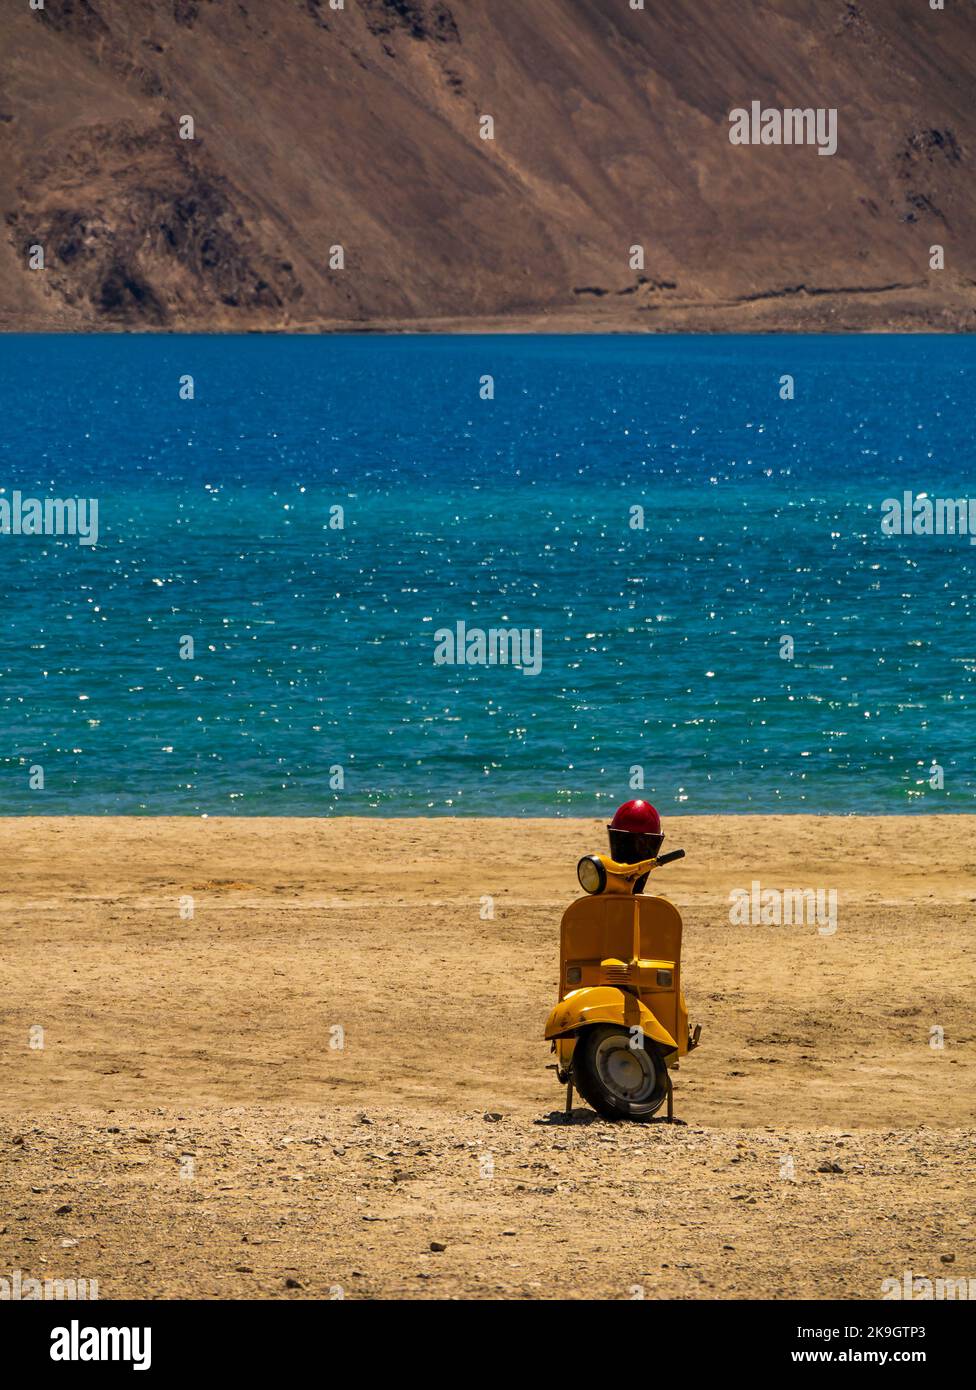 Ladakh, India - 26 giugno 2022 : scooter giallo al lago Pangong, il lago di acqua salata più alto del mondo in una posizione blu in netto contrasto con le aride montagne Foto Stock